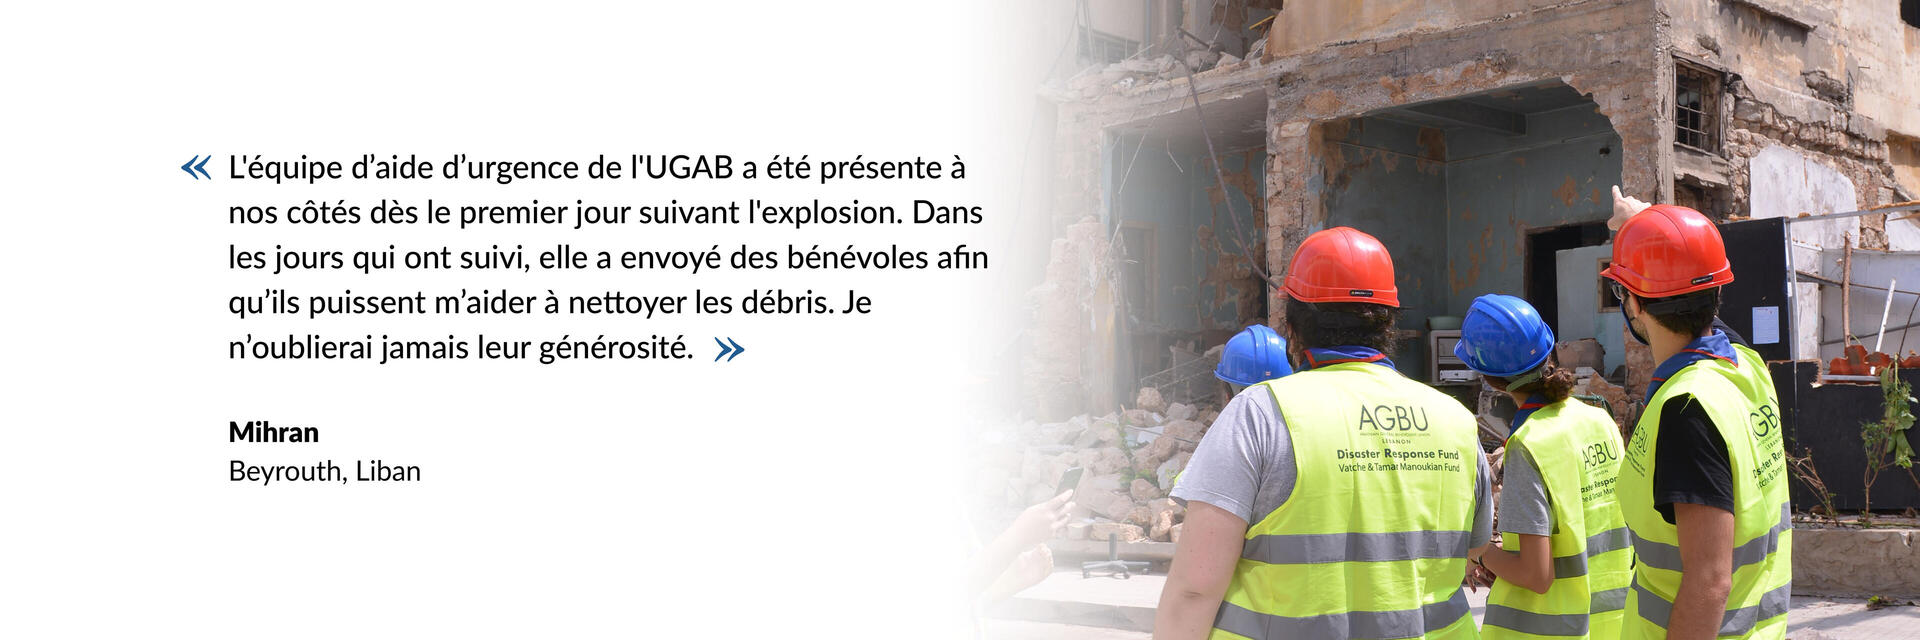 L'équipe d’aide d’urgence de l'UGAB a été présente à nos côtés dès le premier jour suivant l'explosion. Dans les jours qui ont suivi, elle a envoyé des bénévoles afin qu’ils puissent m’aider à nettoyer les débris. Je n’oublierai jamais leur générosité.